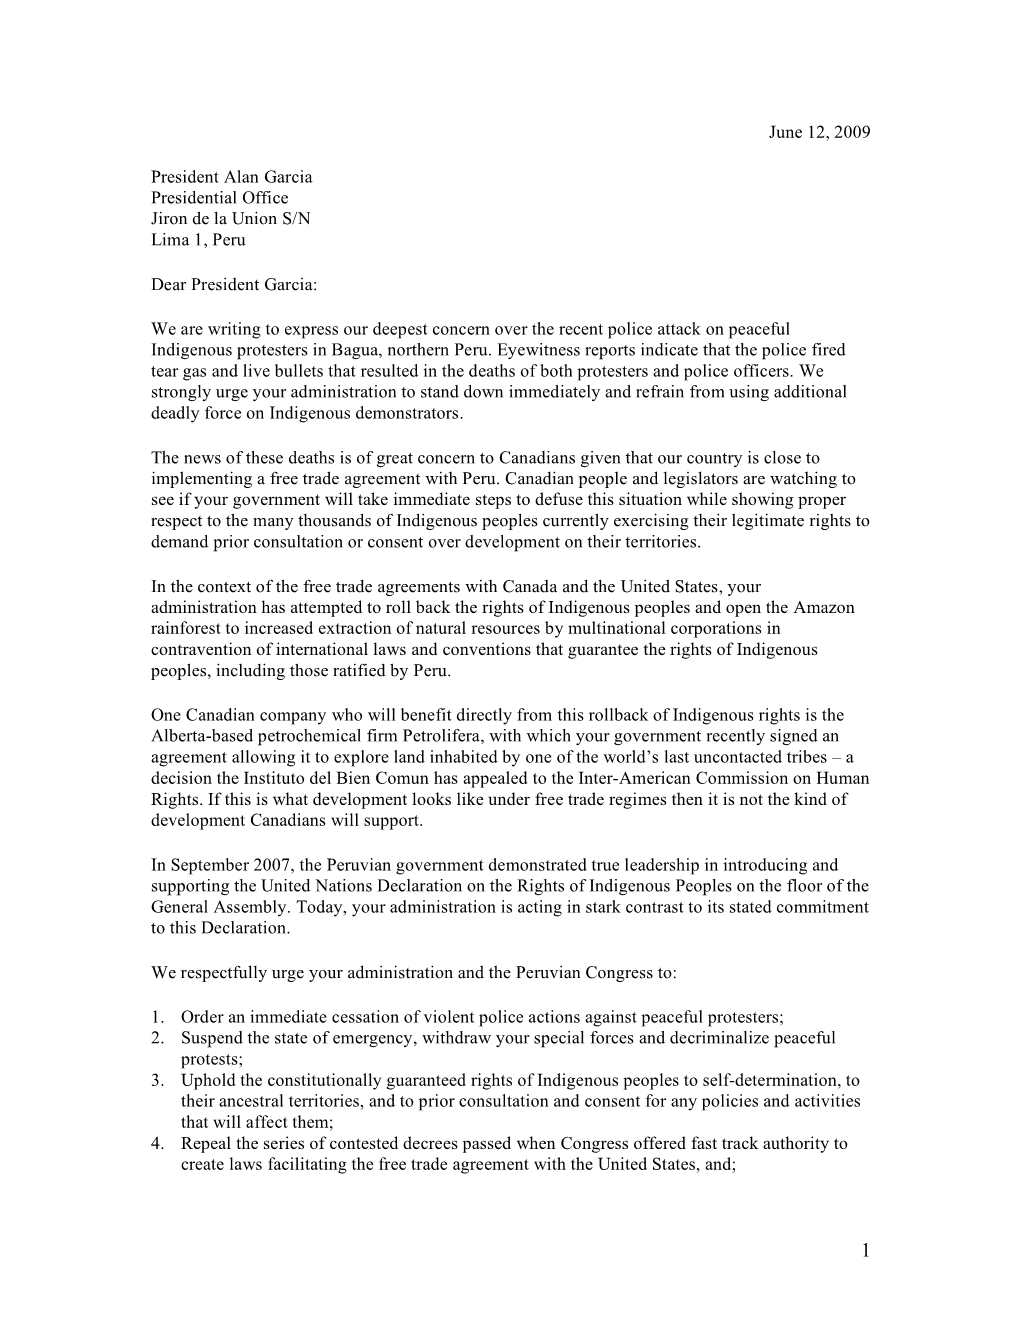 Letter to President Alan Garcia June 12,2009